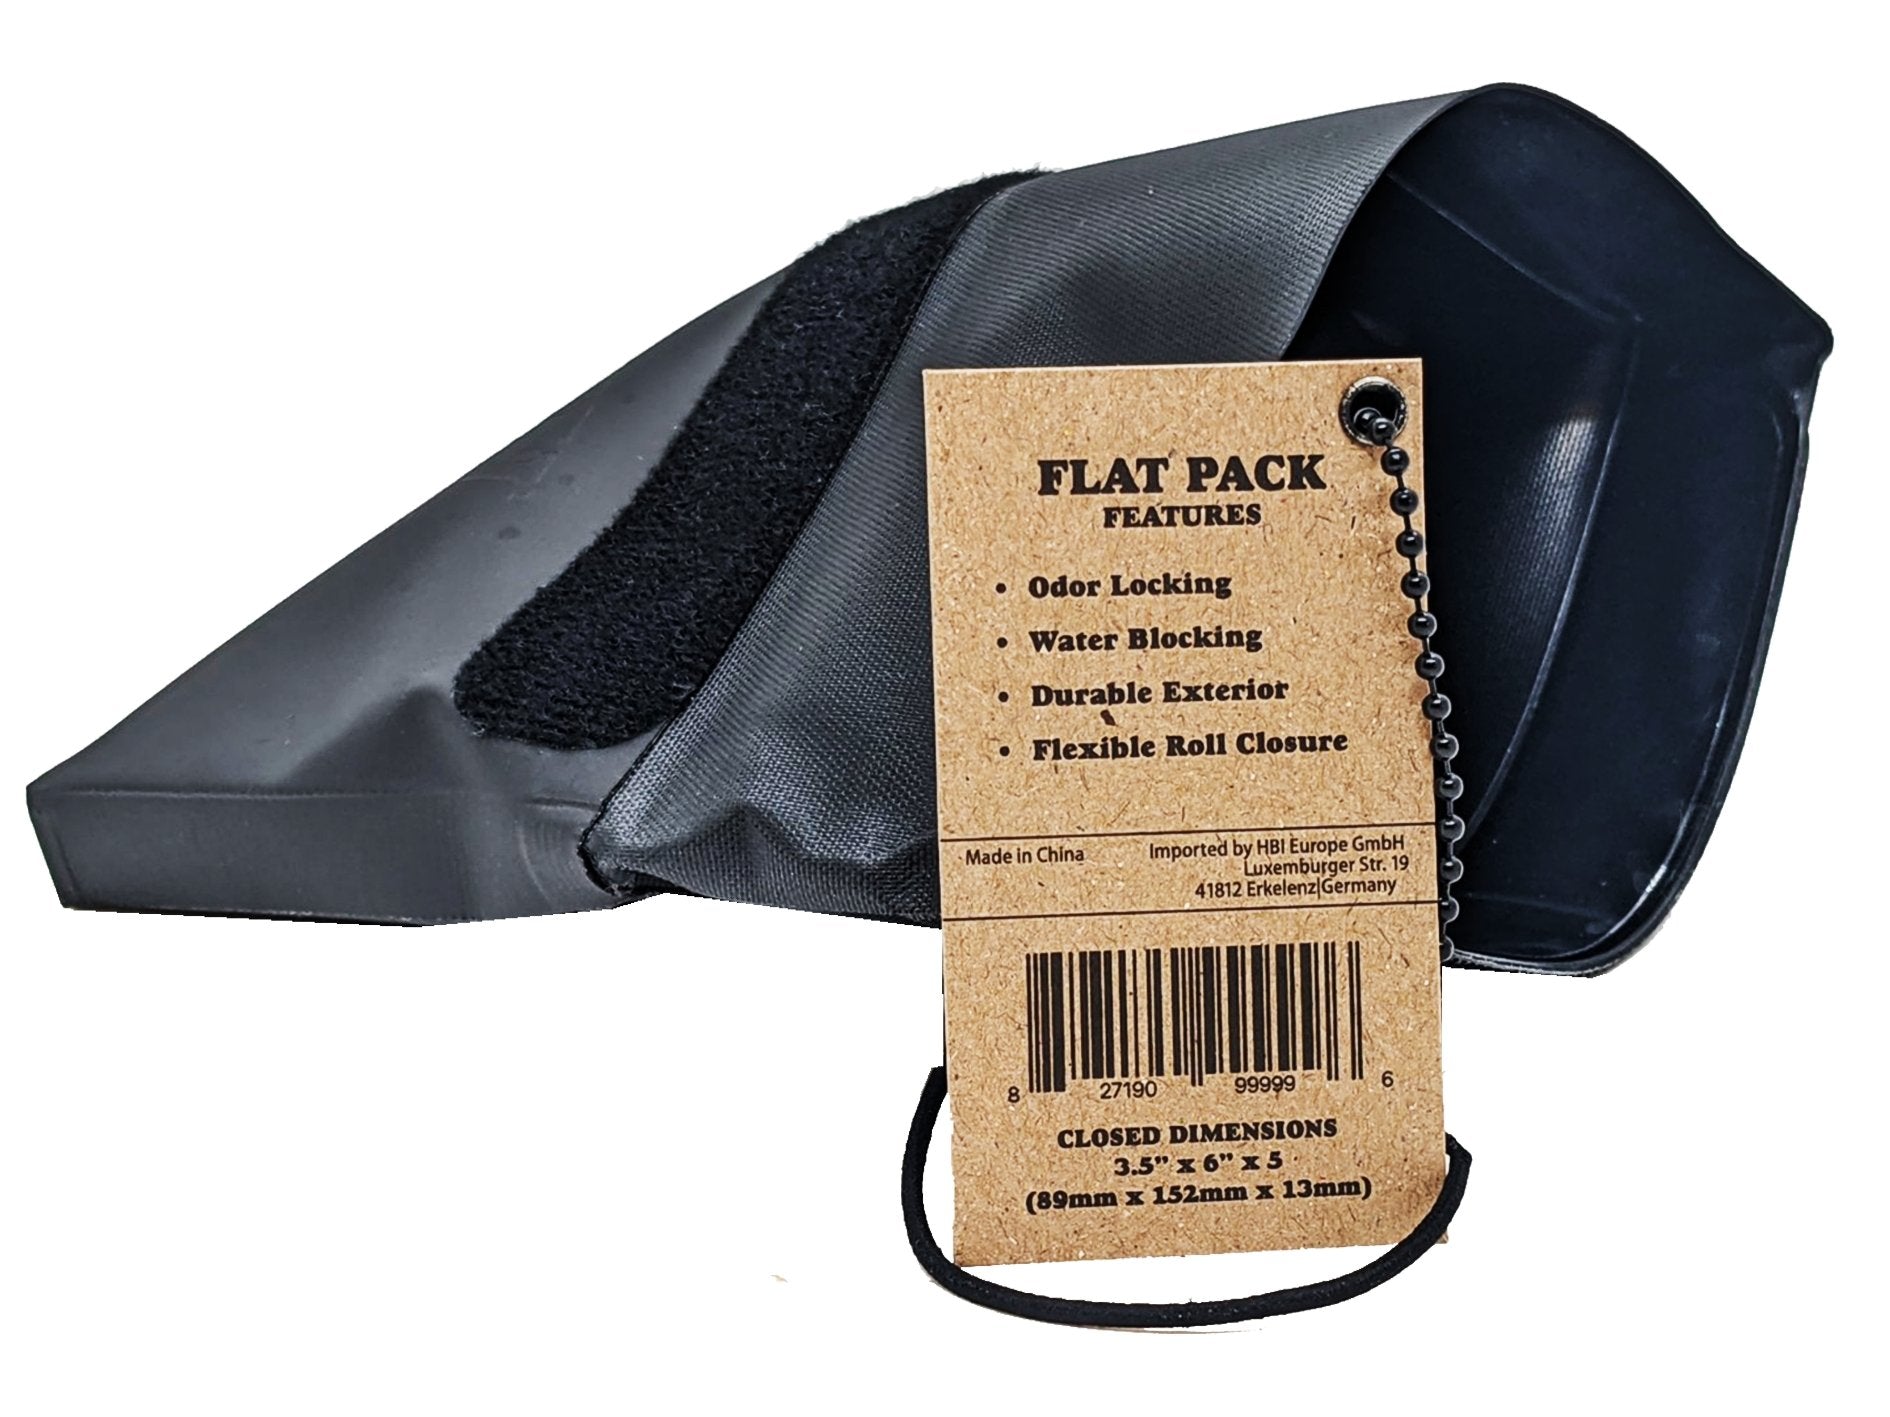 RAW Flat Pack - VIR Wholesale